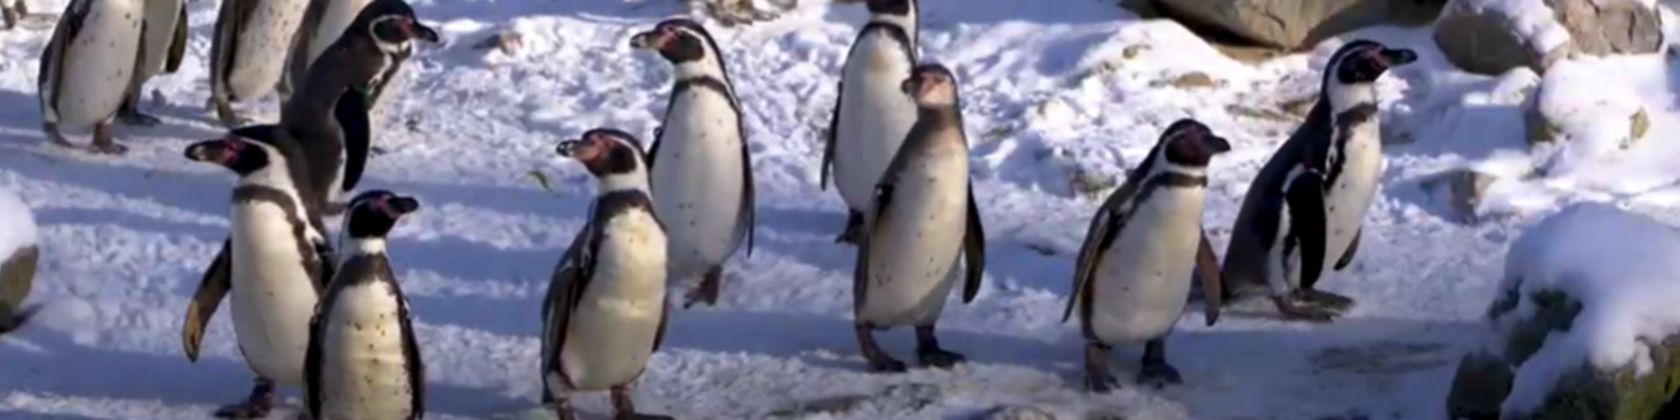 pinguins in de sneeuw tussen rotsblokken